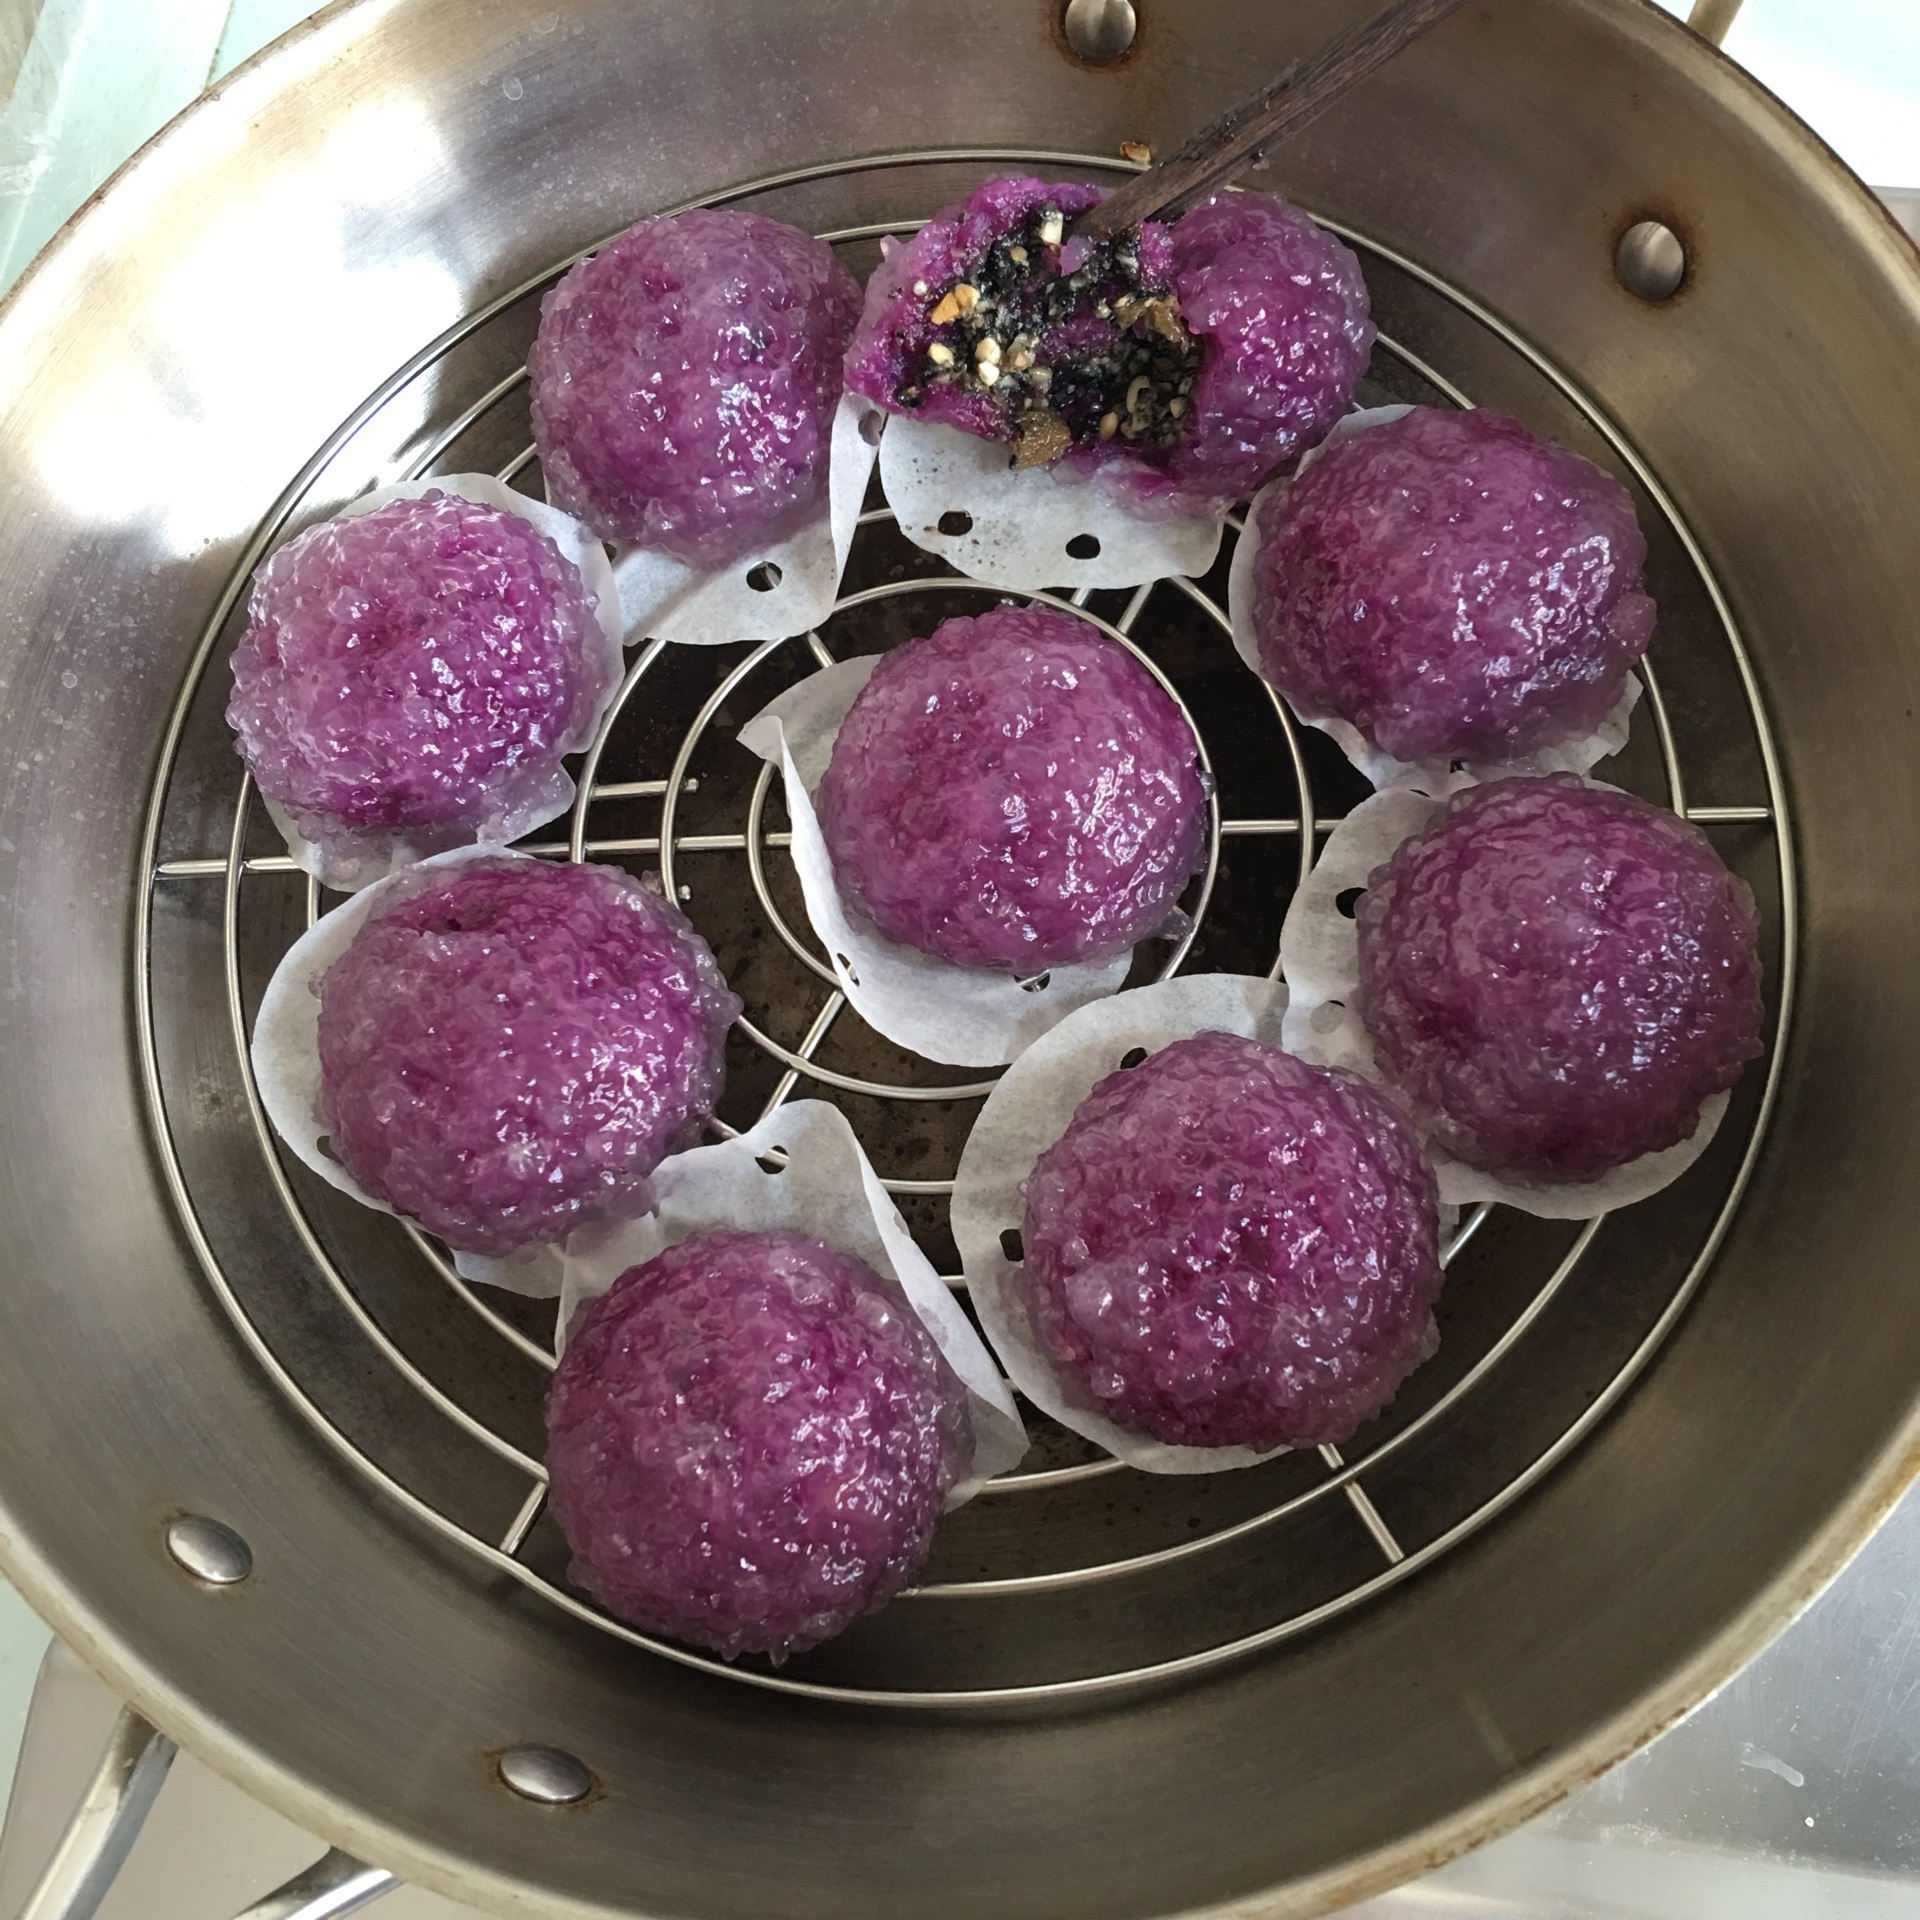 紫薯卷的做法【步骤图】_菜谱_美食杰